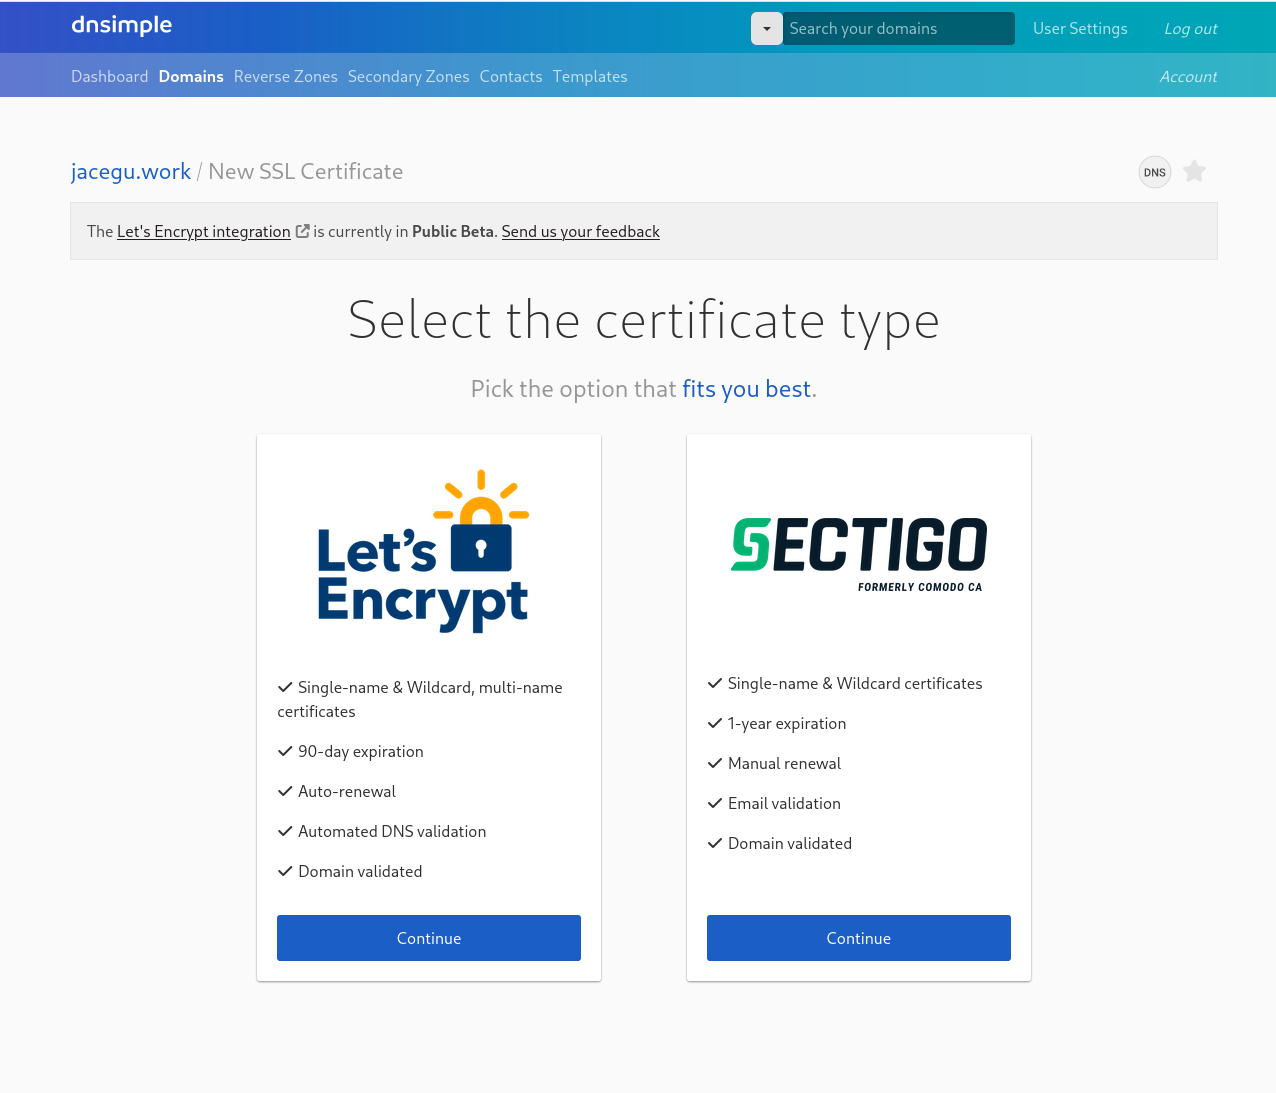 Purchase your commercial certificate through Sectigo